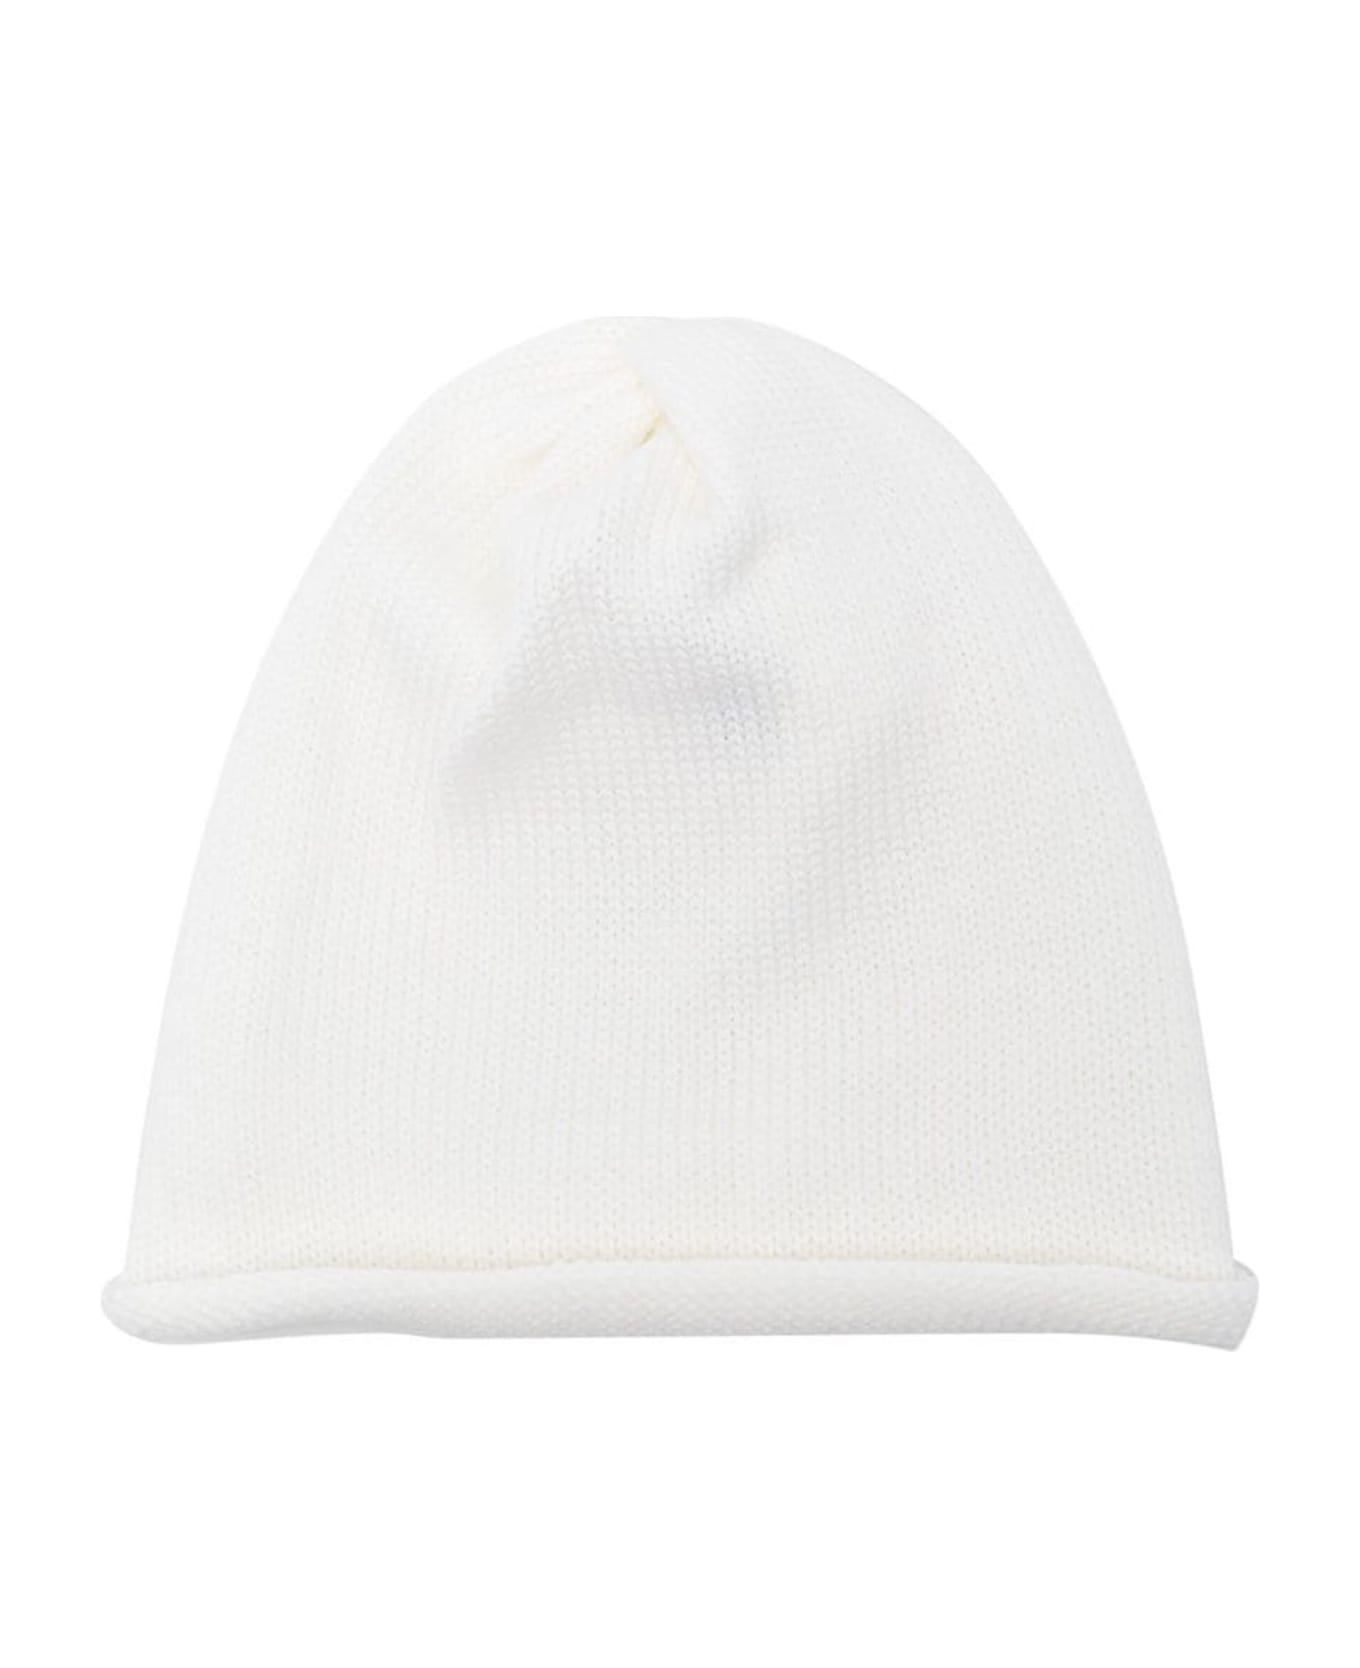 Little Bear Hats White - White